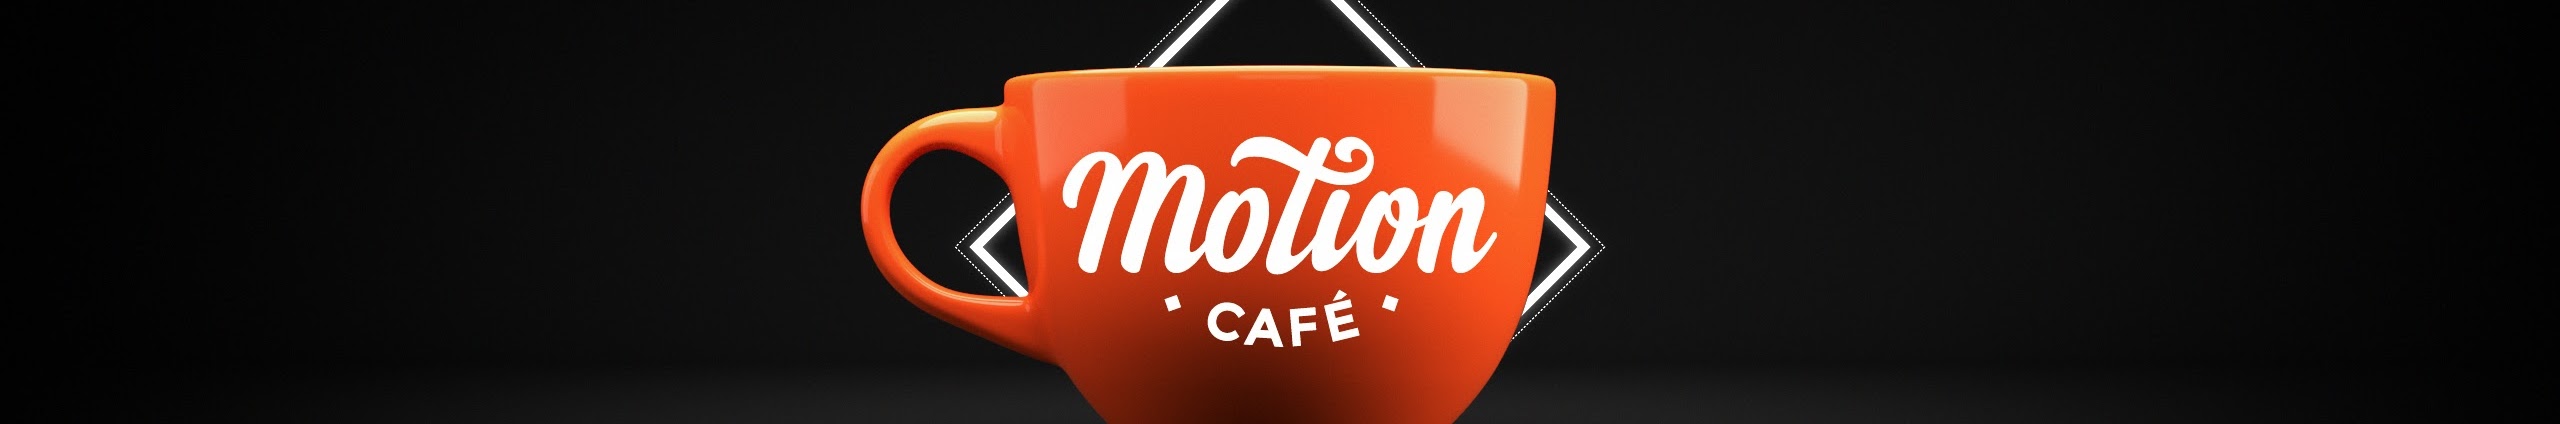 Motion Café - Unreal 5.4/Motion Design